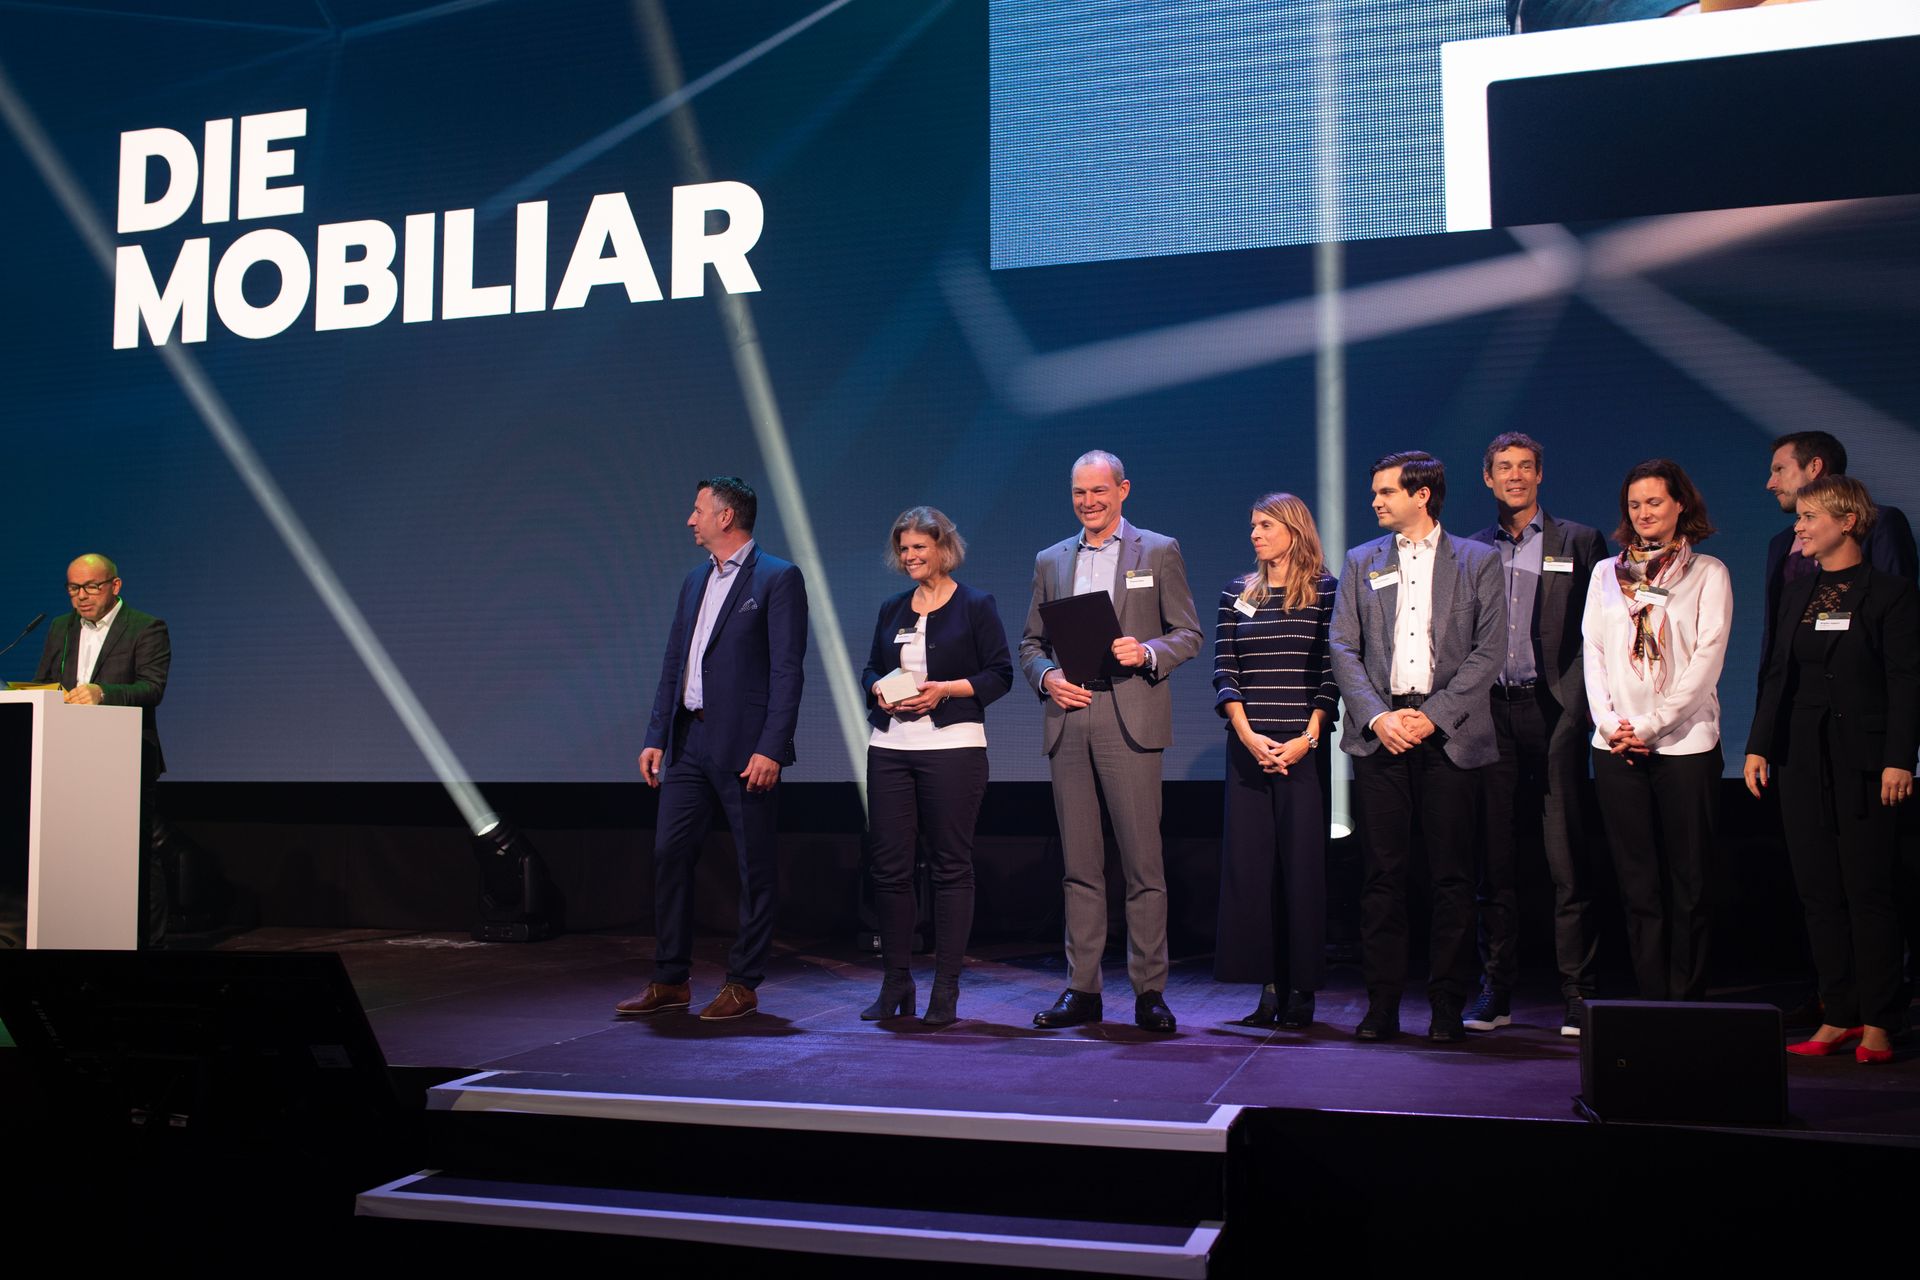 კომპანია "La Mobiliare" დაჯილდოვდა "Digital Excellence PMI" შვეიცარიის "Digital Economy Award"-ზე.